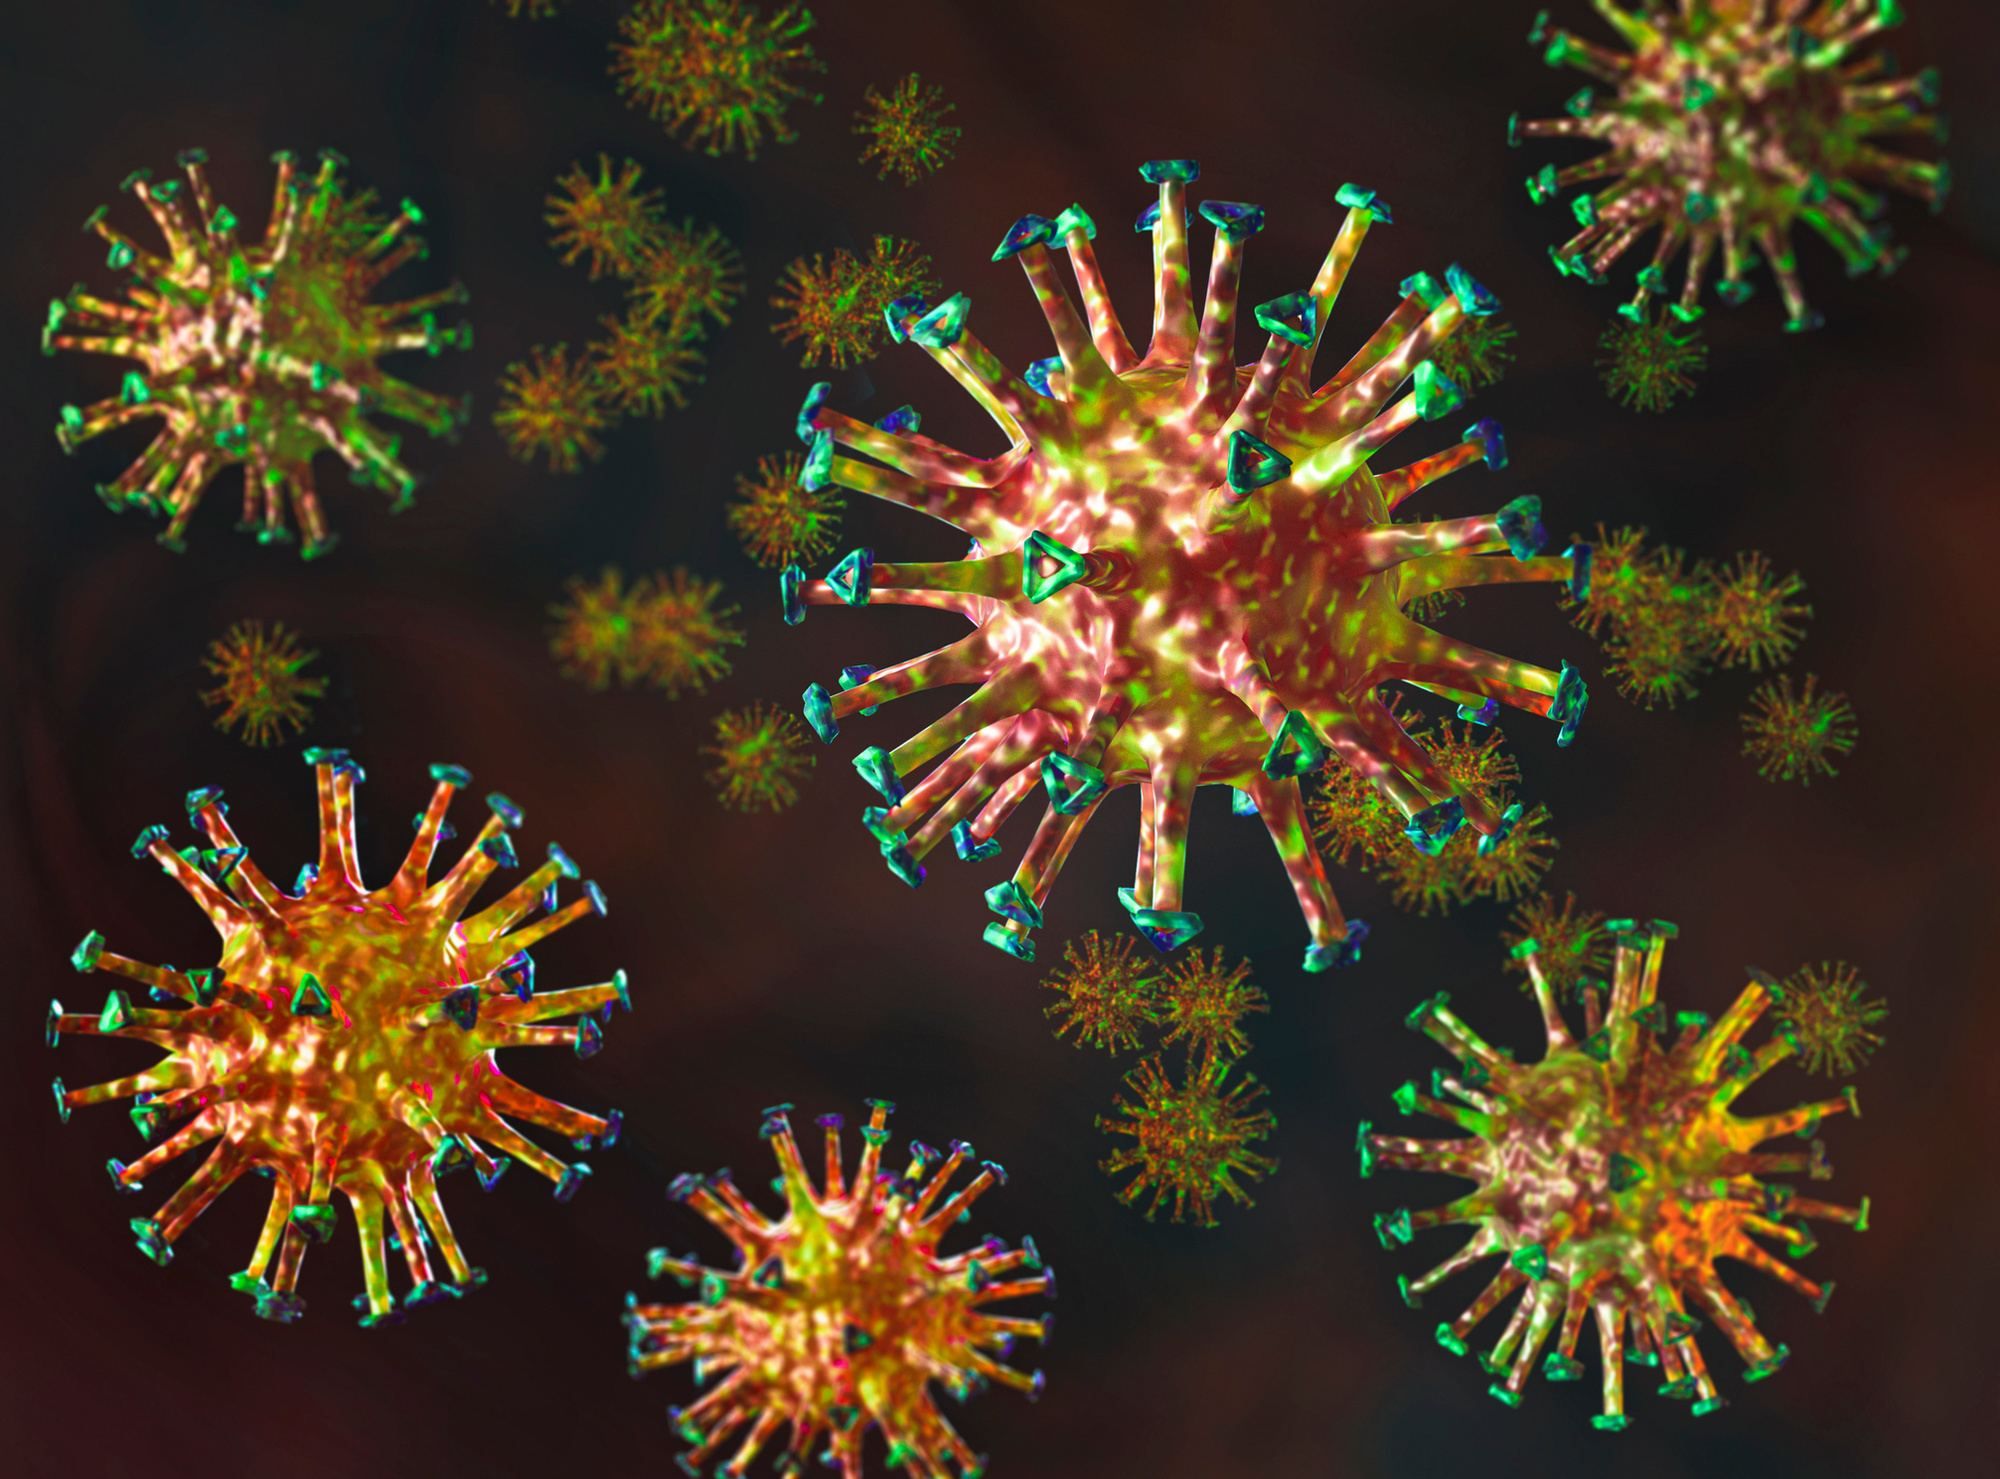 "Природа дуже розумна": вчені відкрили механізм утворення заразніших штамів коронавірусу 